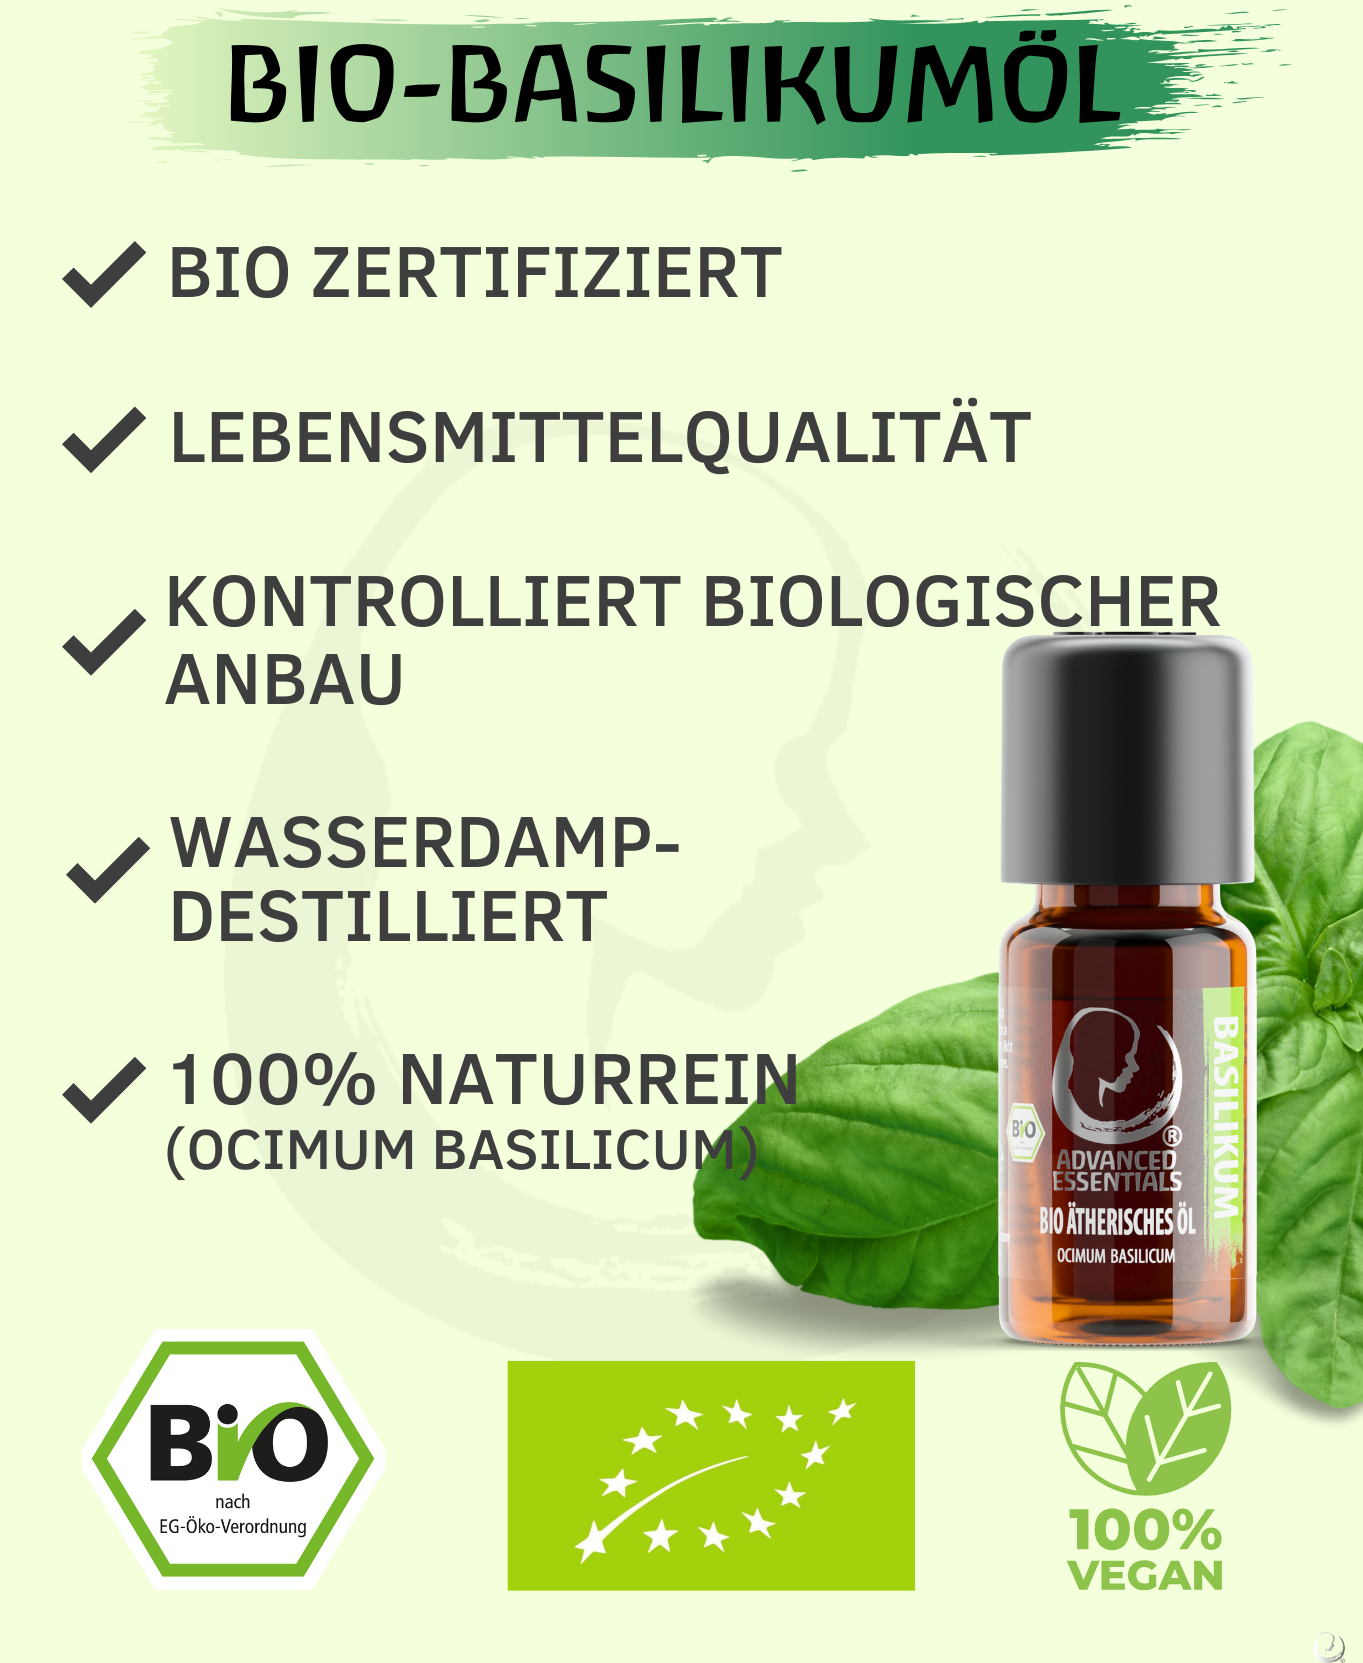 BIO Basilikumöl ätherisches Öl (Ocimum basilicum)